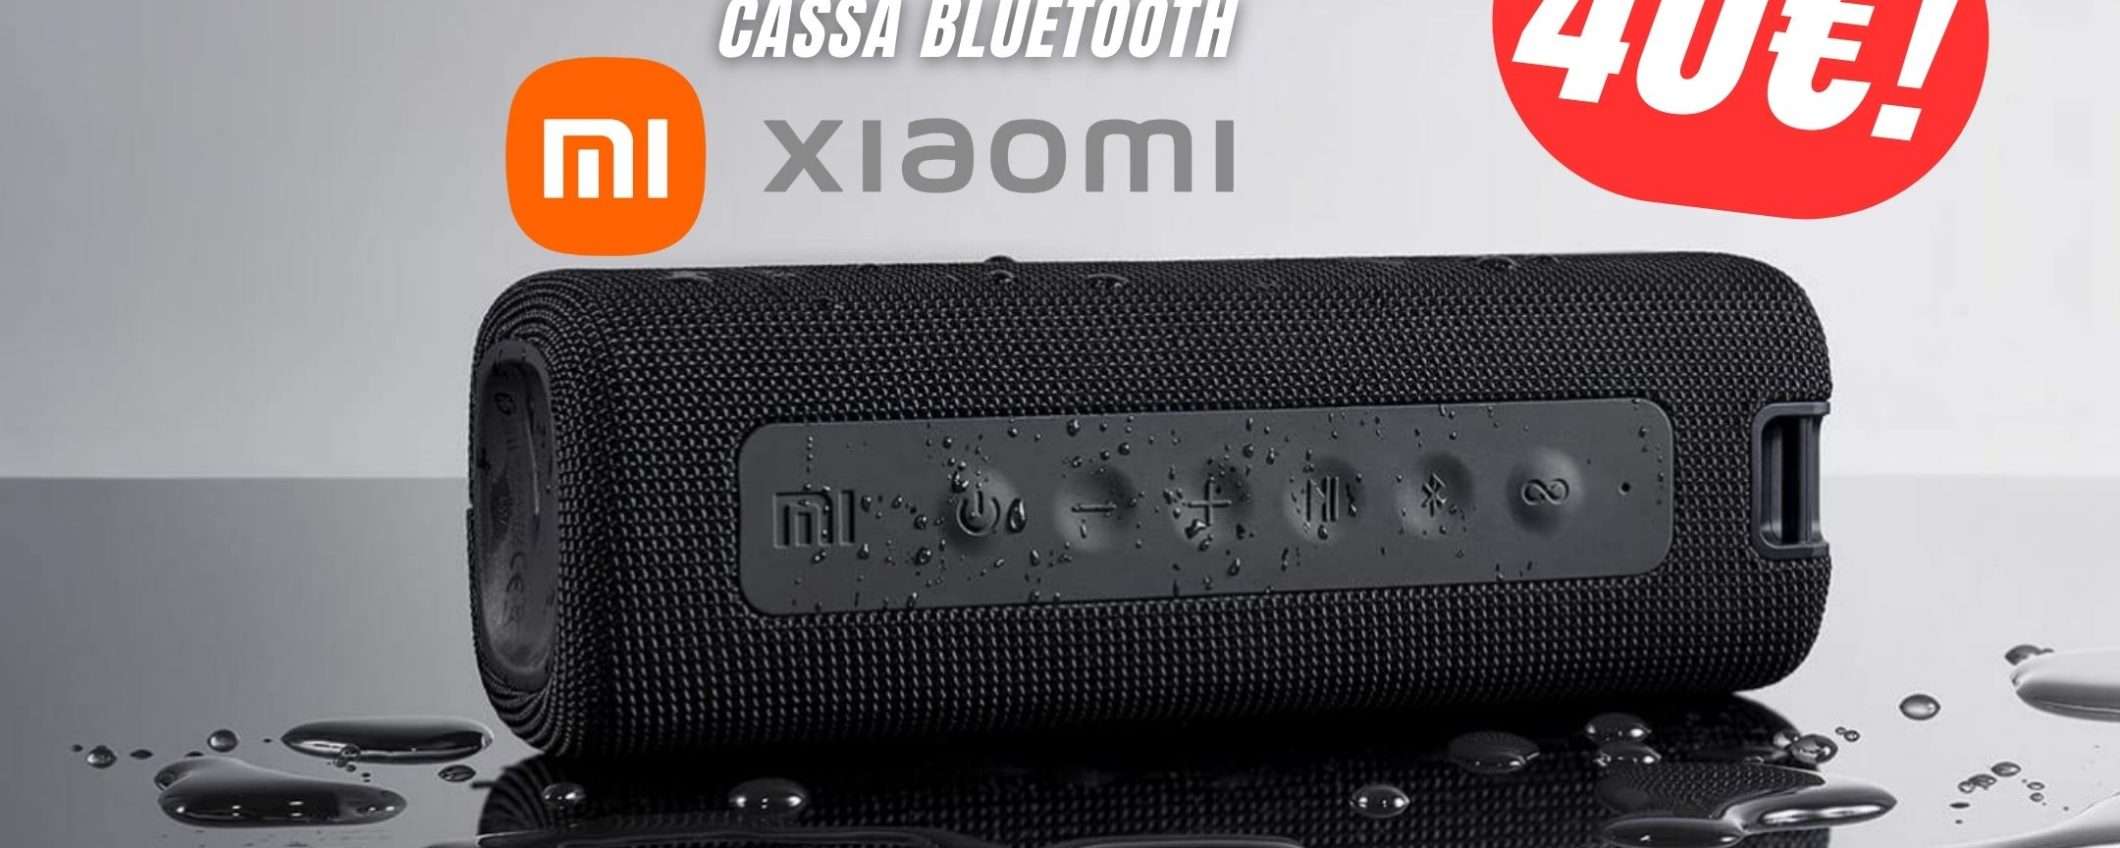 La Cassa Bluetooth di Xiaomi è potentissima e costa solo 40€!